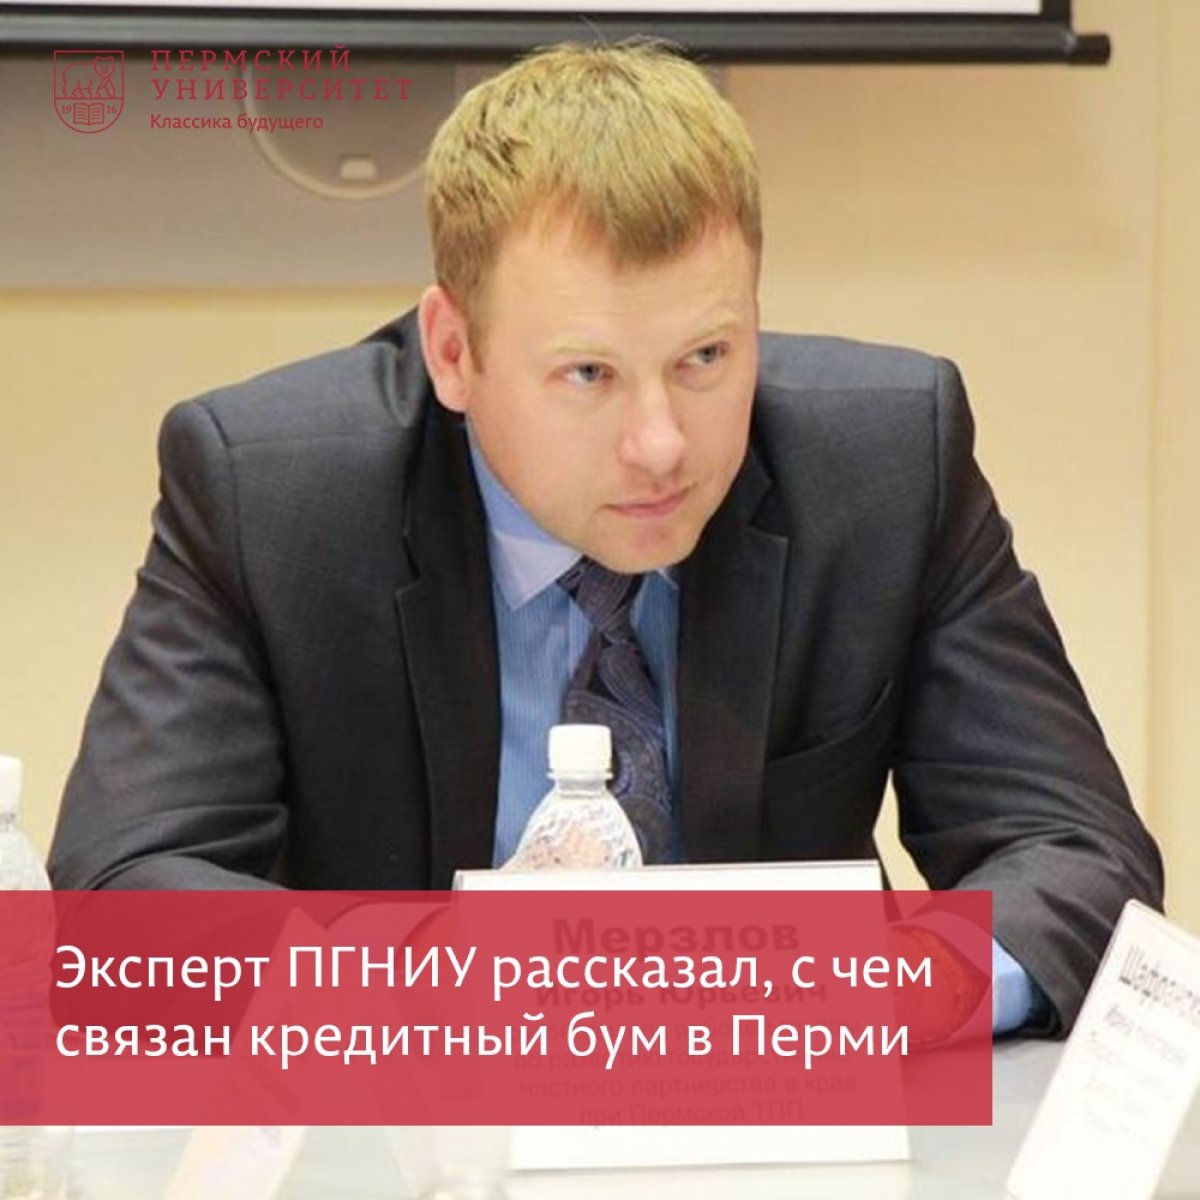 Игорь Мерзлов, доцент Пермского университета, рассказал, с чем связан кредитный бум в Перми